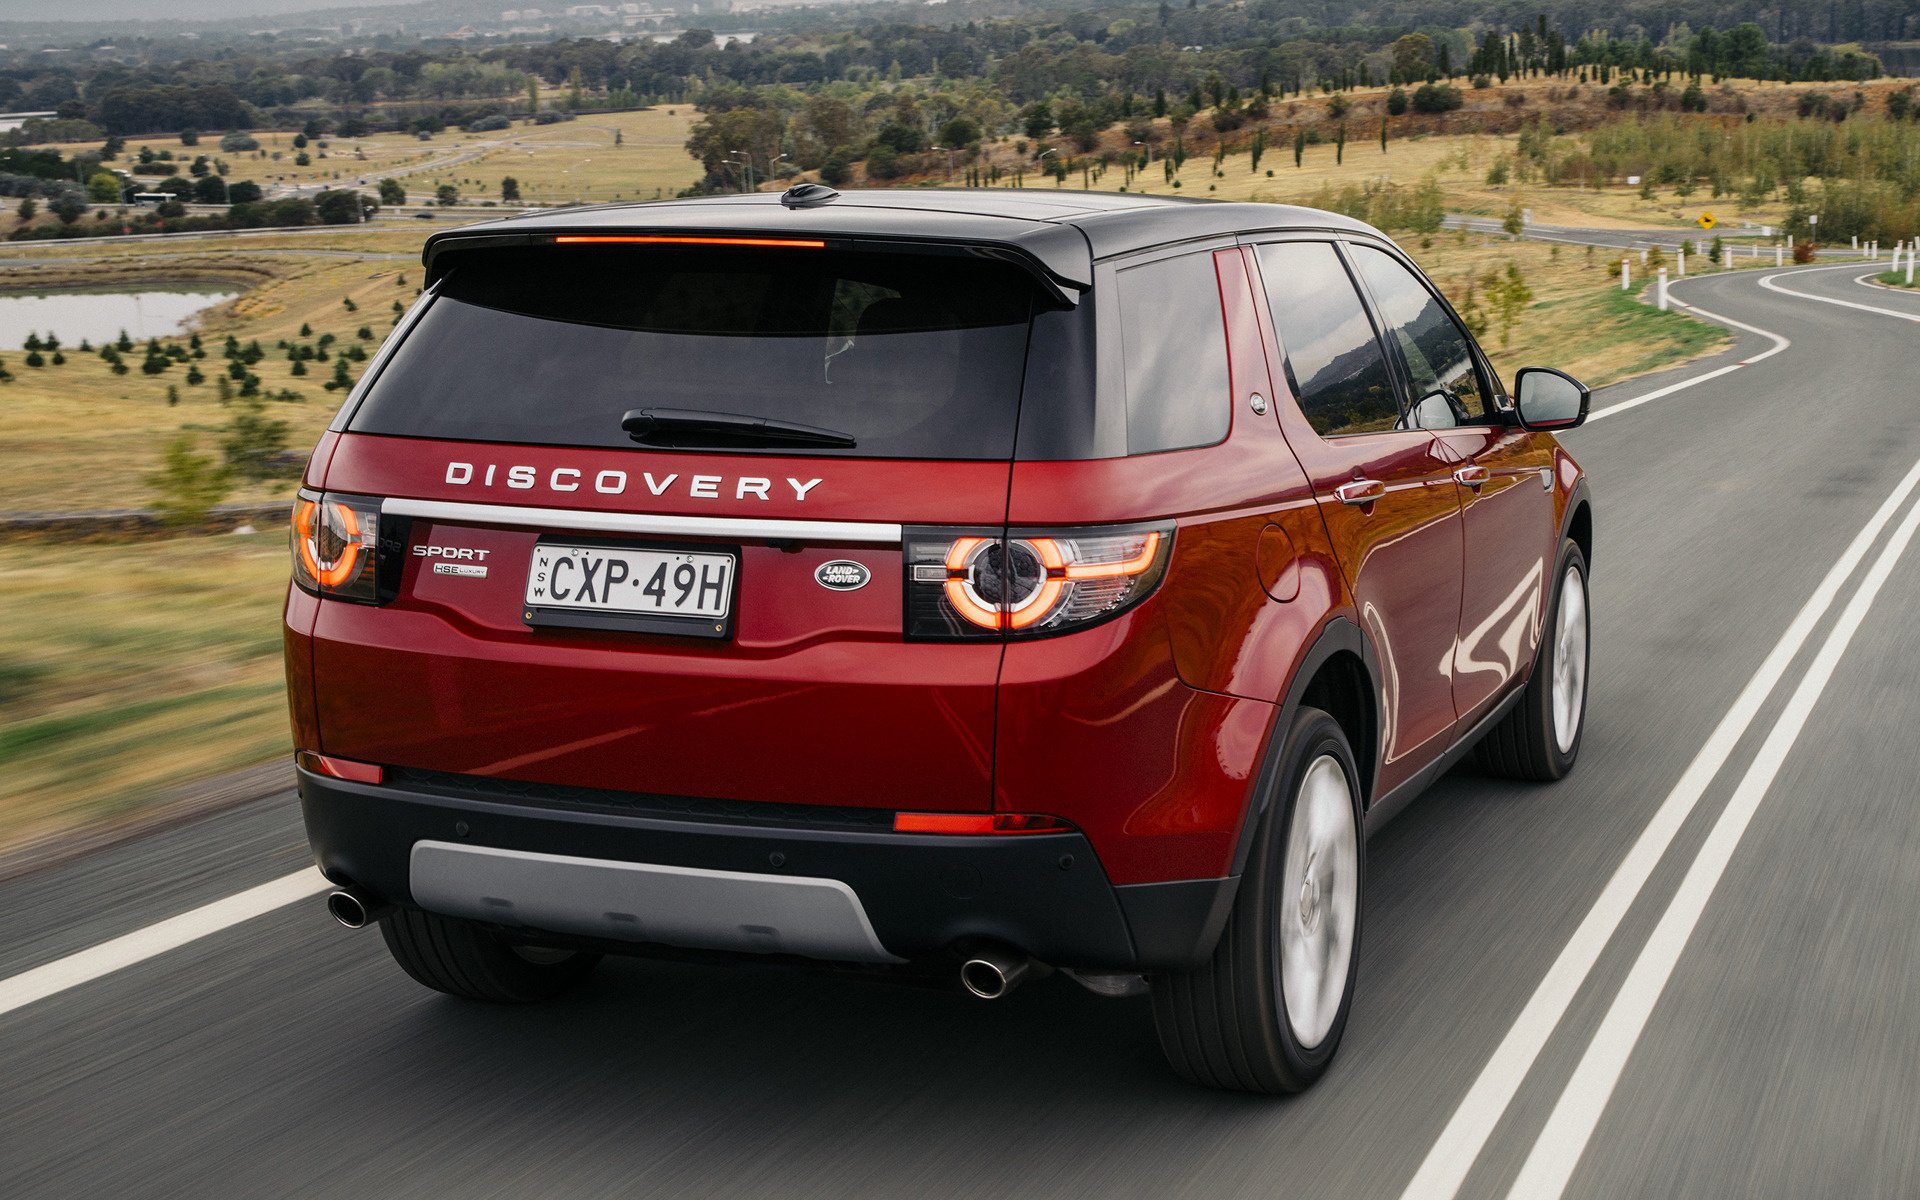 Купить рендж ровер дискавери. Ленд Ровер Дискавери спорт 2015. Land Rover Discovery Sport 2015. Ленд Ровер Дискавери 2015. Range Rover Discovery Sport 2015.